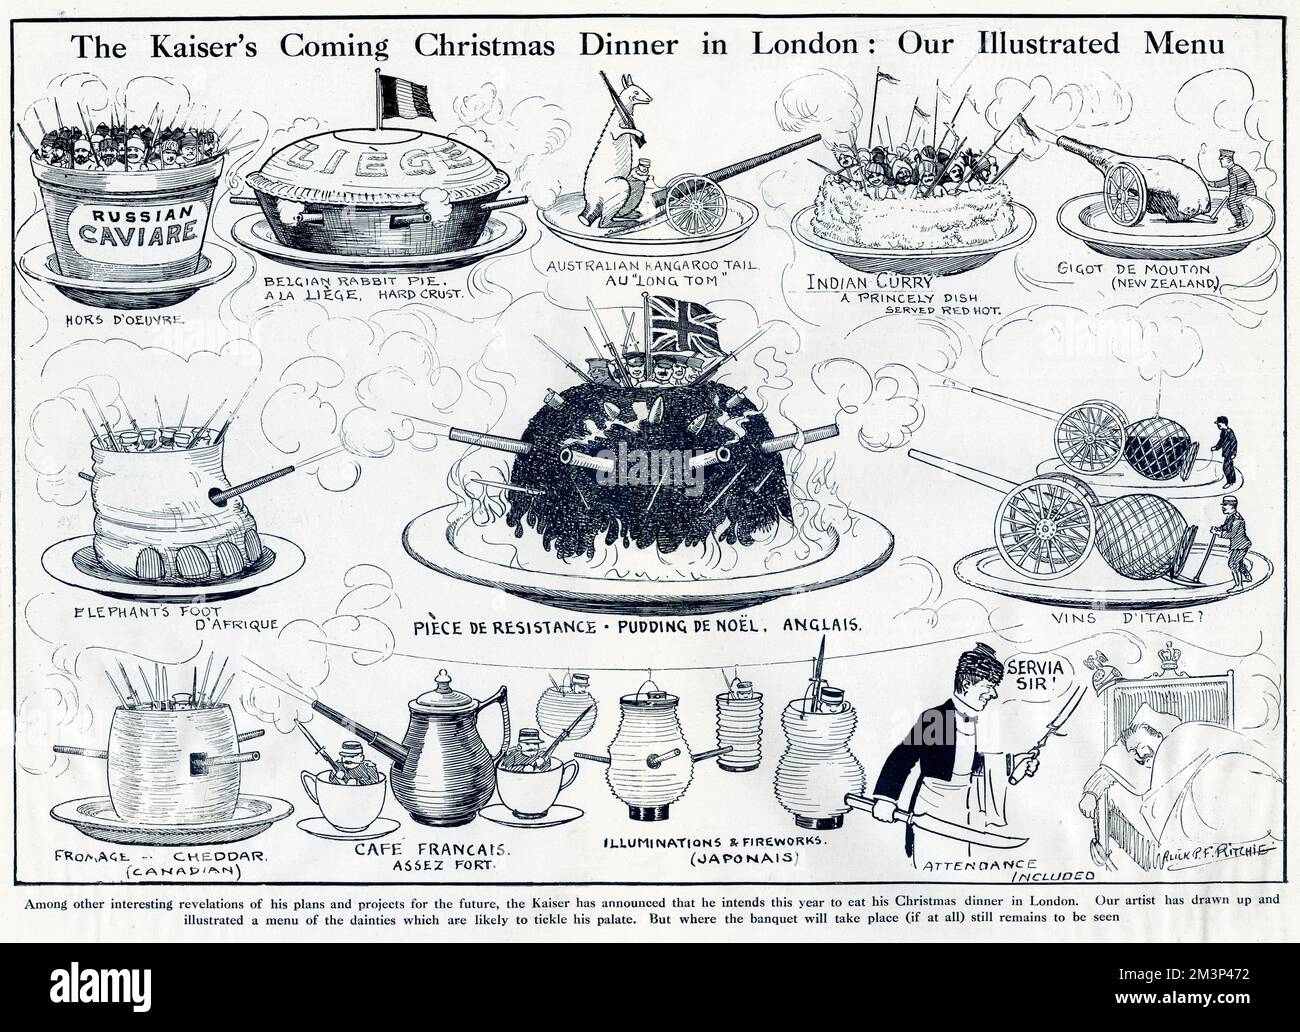 Cartoon, The Kaiser's Coming Christmas Dinner in London: Unser illustriertes Menü. Der Kaiser hatte seine Absicht angekündigt, nach einer geplanten Invasion in den frühen Stadien des Ersten Weltkriegs sein Weihnachtsessen in London zu essen. Die angebotenen Gerichte, die einen großen Teil der Alliierten Truppen ausmachen, sind: Russischer Kaviare, belgischer Rabbit Pie a la Liege (harte Kruste), australischer Kängurutschwanz, indisches Curry (rot serviert), Gigot de Mouton (Neuseeland), Elephant's Foot d'Afrique, Piece de Resistance, Pudding de Noel Anglais, Vins d'Italie, Fromage Cheddar (kanadisch), Café Francais assez. Es gibt Japaner Stockfoto